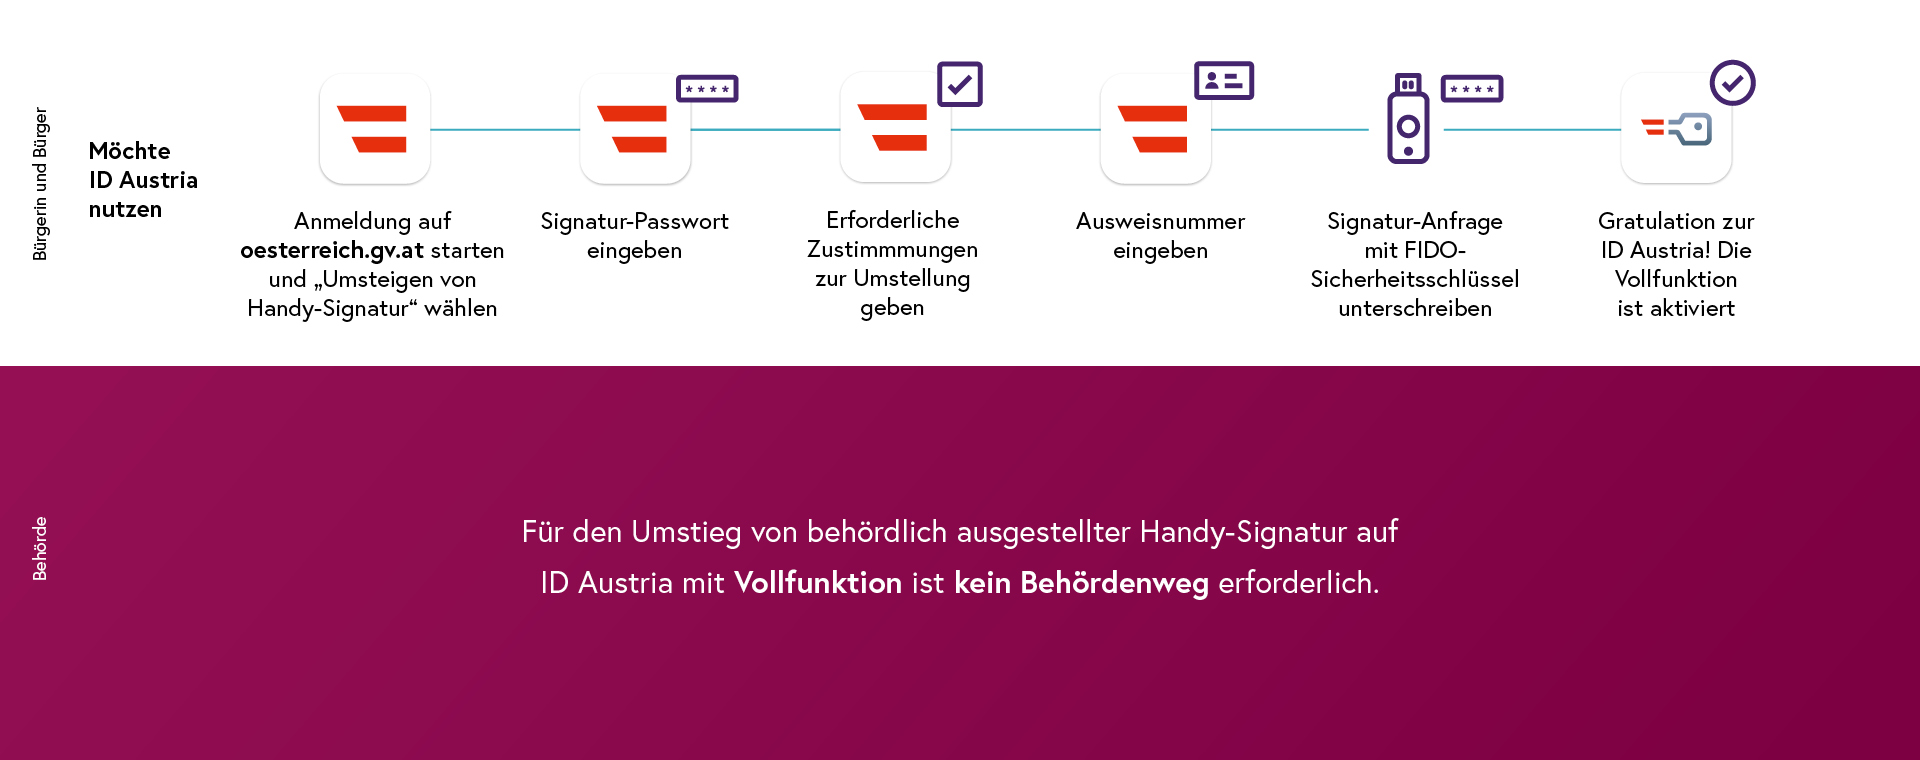 Umstieg im Web von Handy-Signatur auf ID Austria mit FIDO